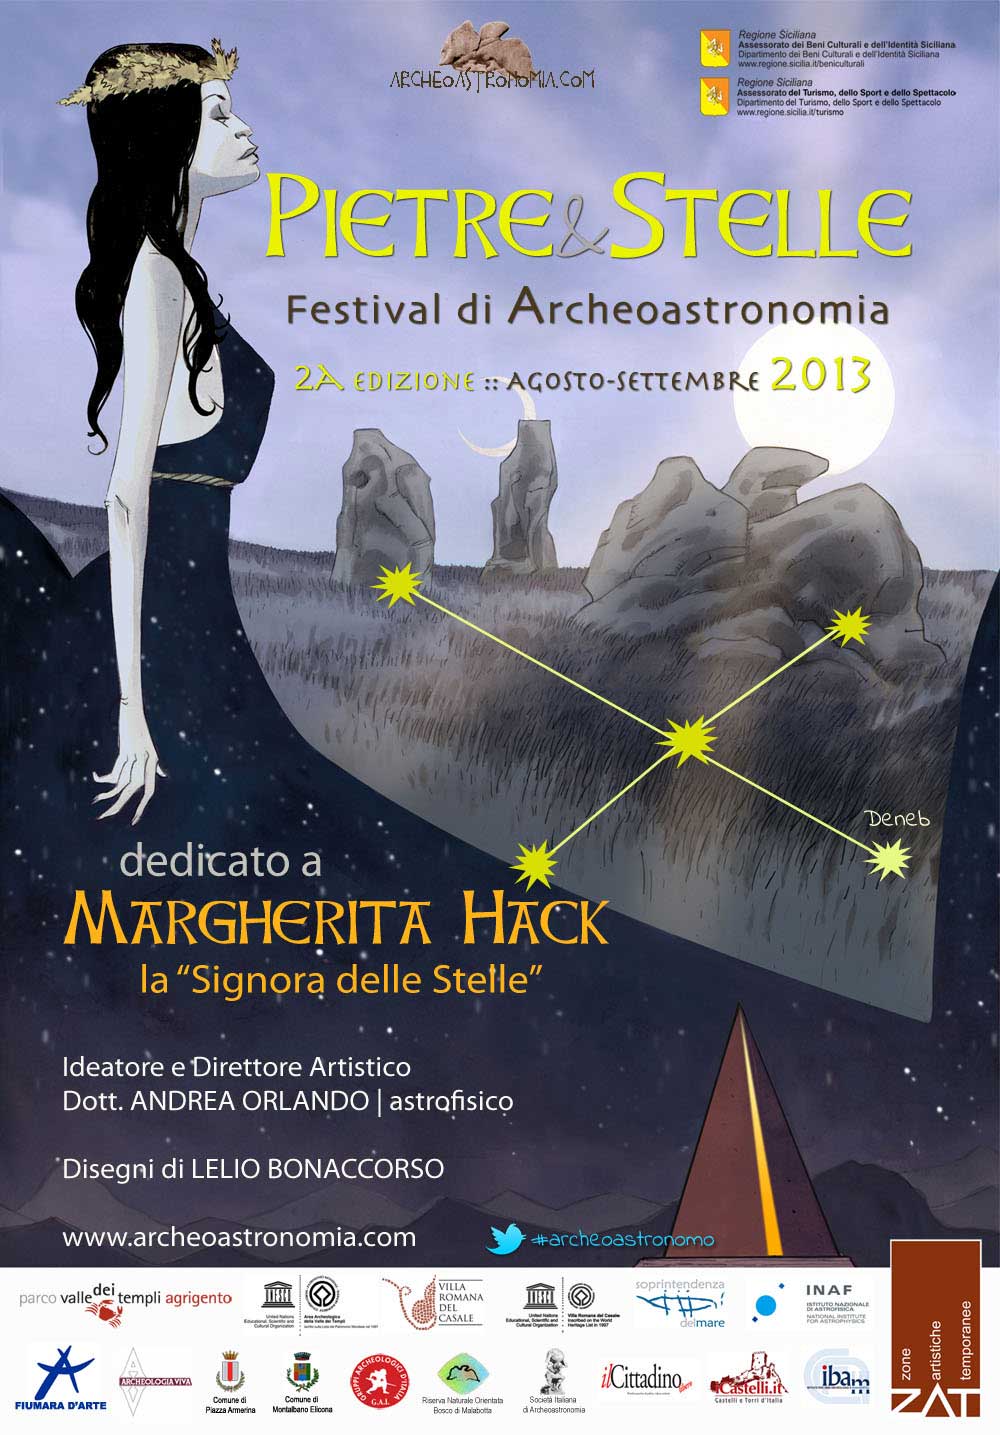 Festival di Archeoastronomia Pietre&Stelle, edizione 2013